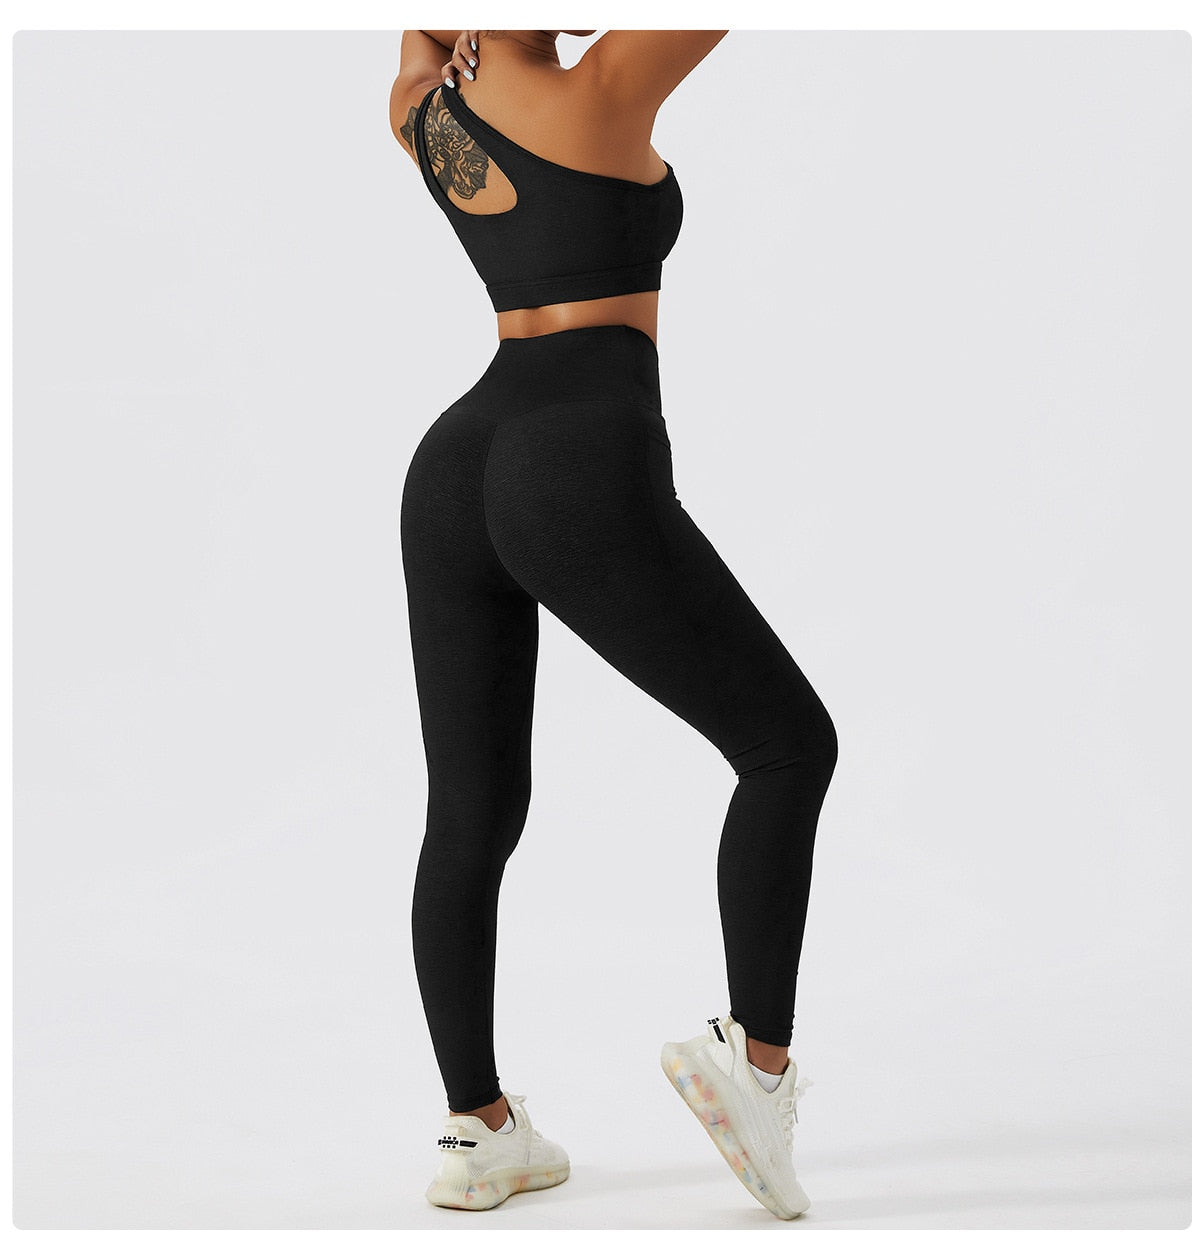 2 Piece Yoga Clothes Women&#39;s Tracksuit Athletic Wear Pilates Fitness Suit Gym Workout Push Up Clothes Sports Bra Leggings Suit